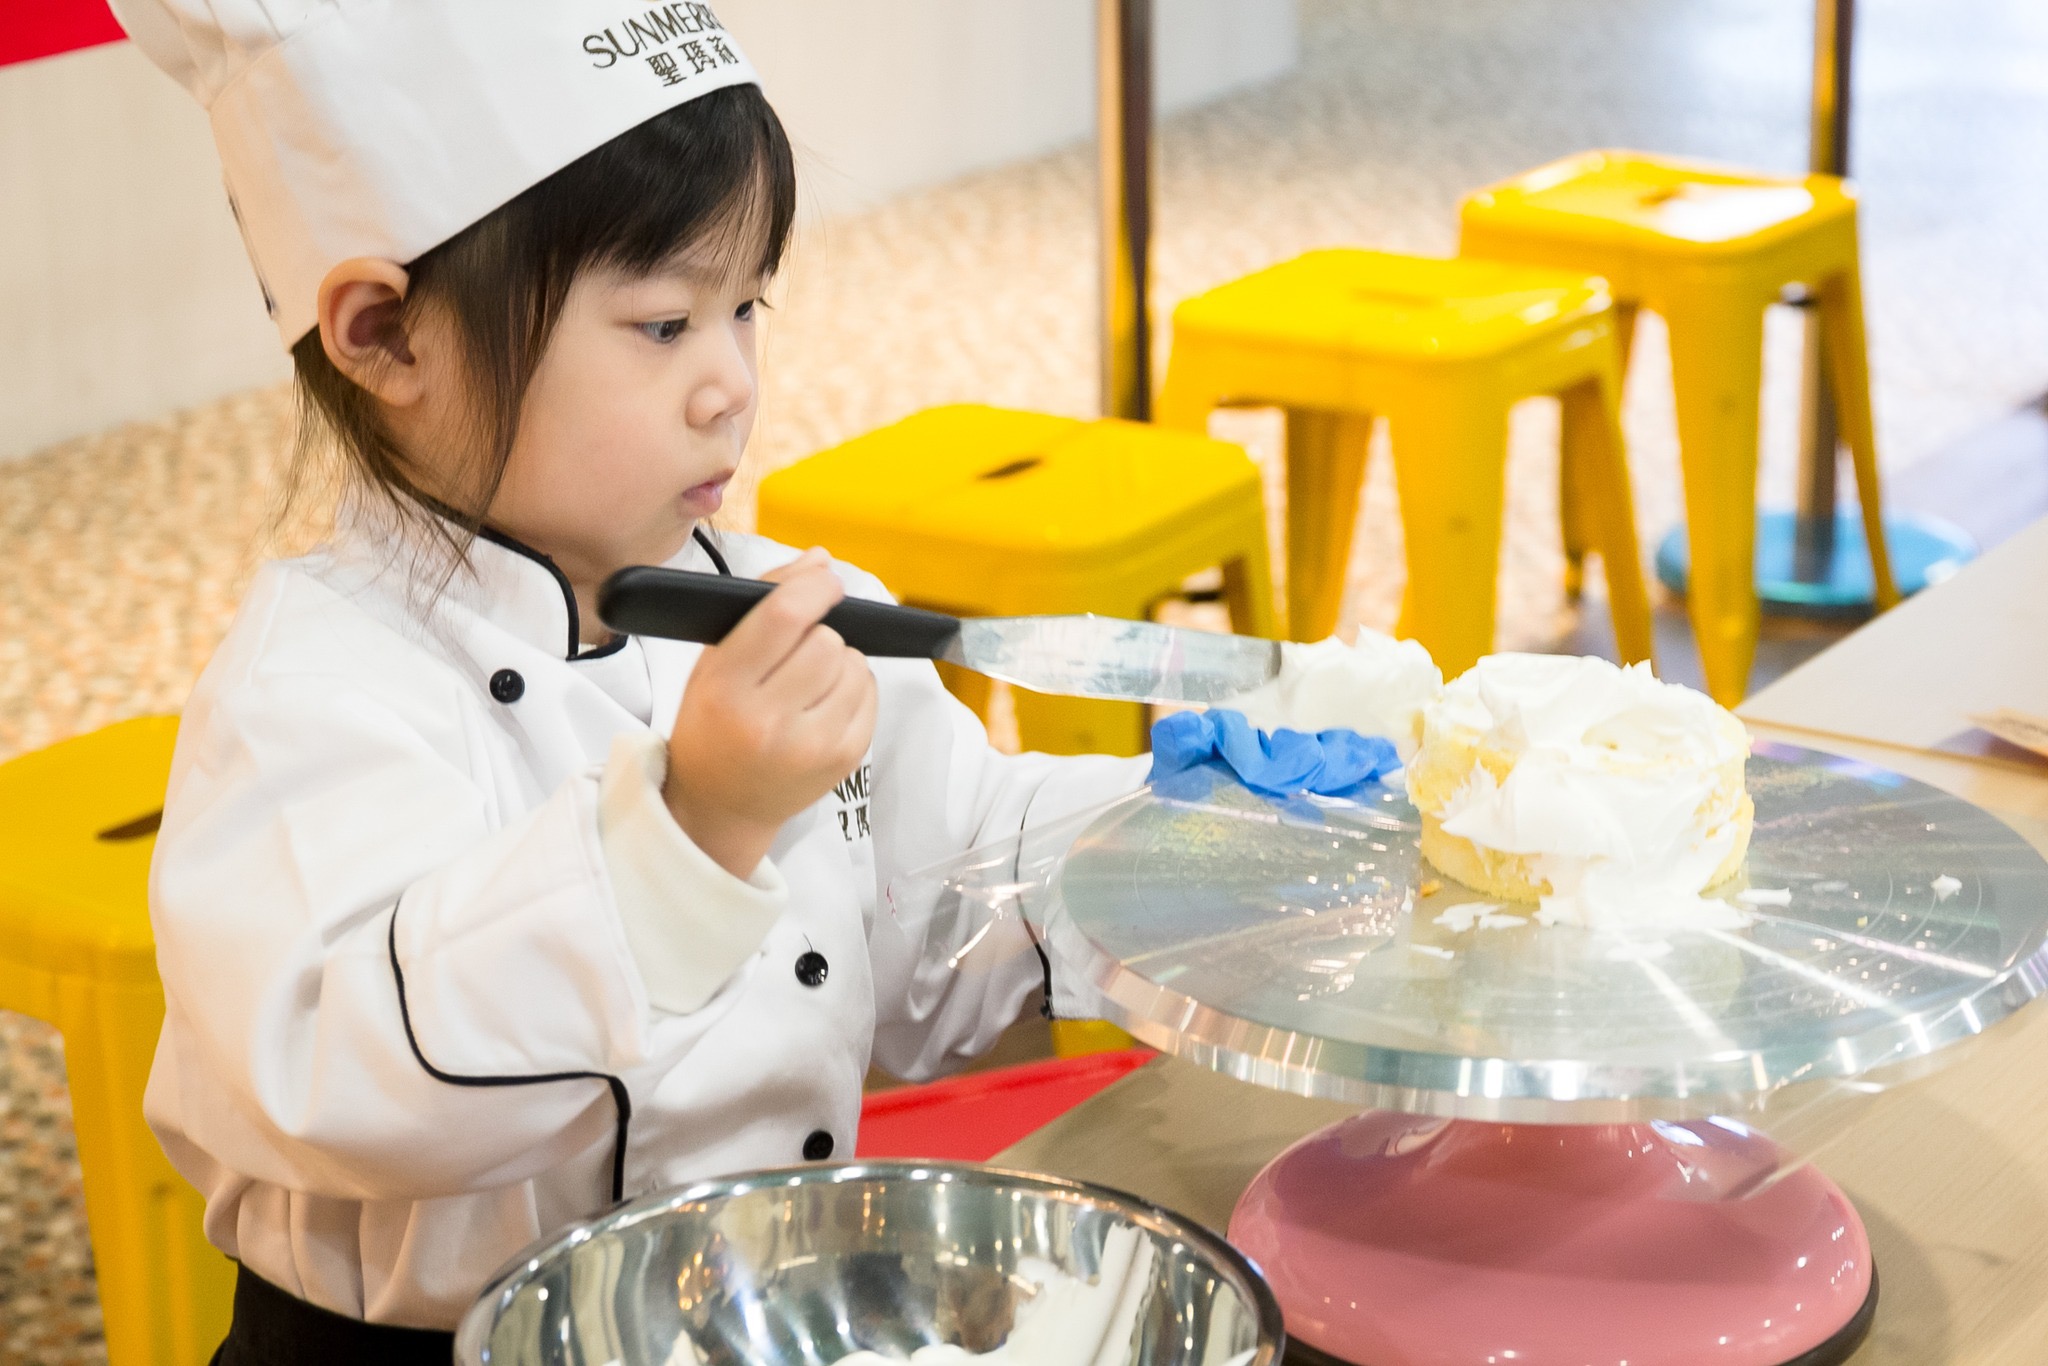 聖瑪莉丹麥麵包莊園，體驗烘焙手作的樂趣。兒童憑證件可免費入館參觀